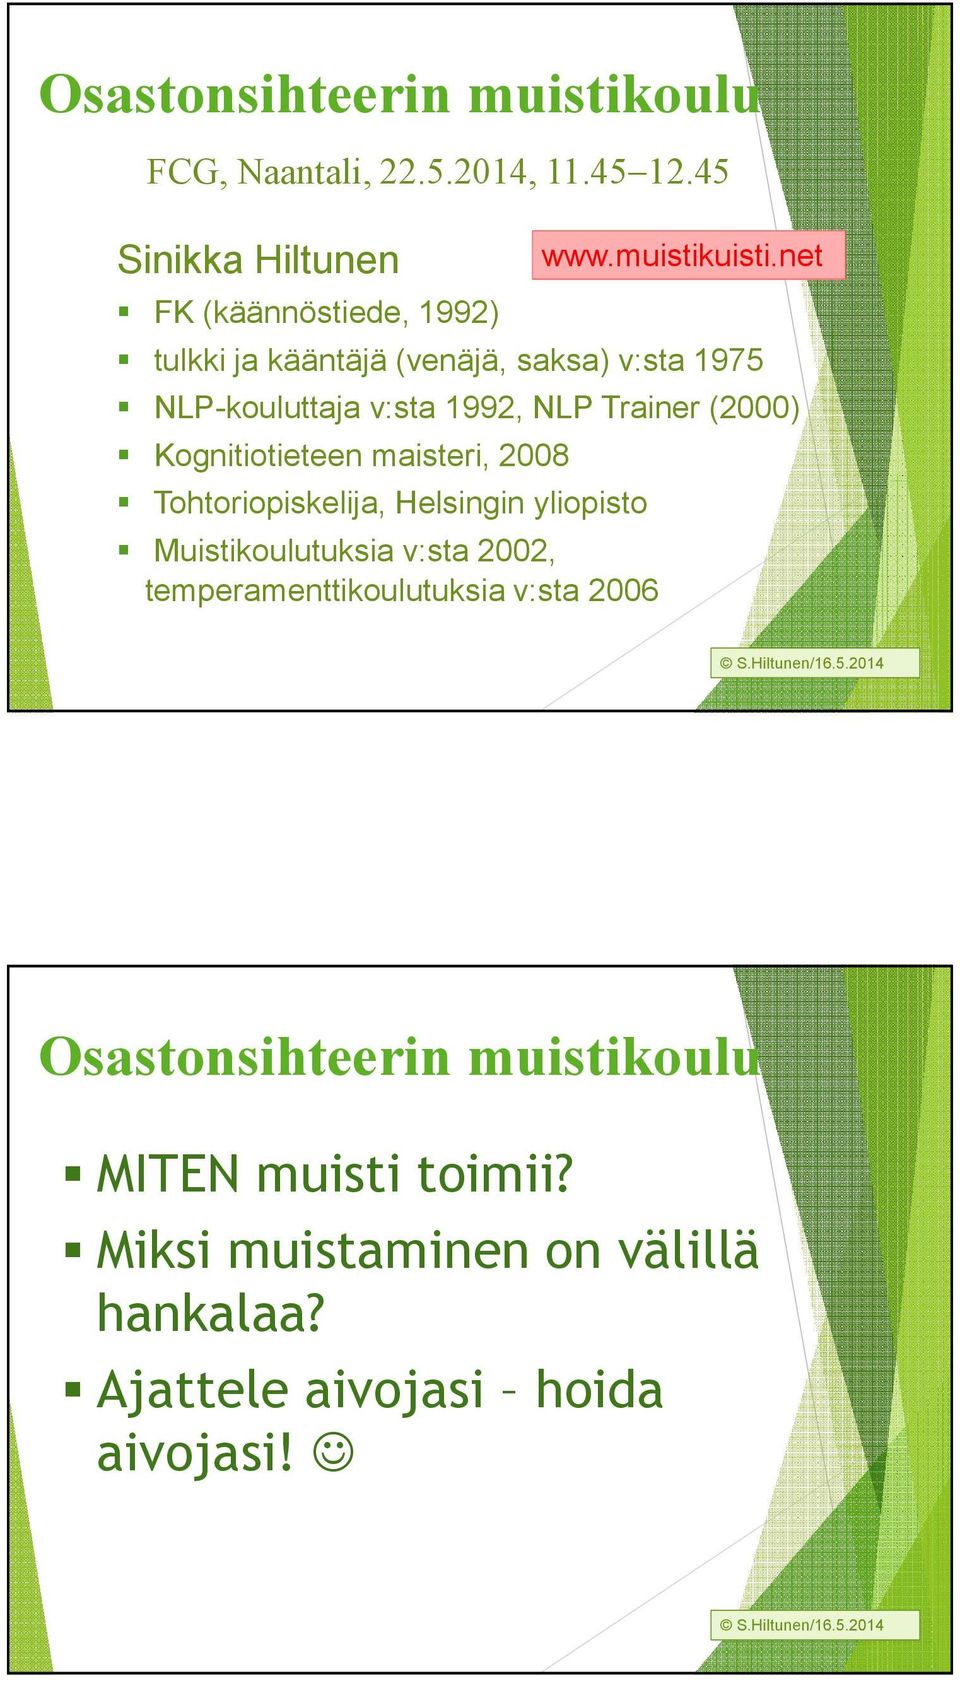 NLP Trainer (2000) Kognitiotieteen maisteri, 2008 Tohtoriopiskelija, Helsingin yliopisto Muistikoulutuksia v:sta 2002,